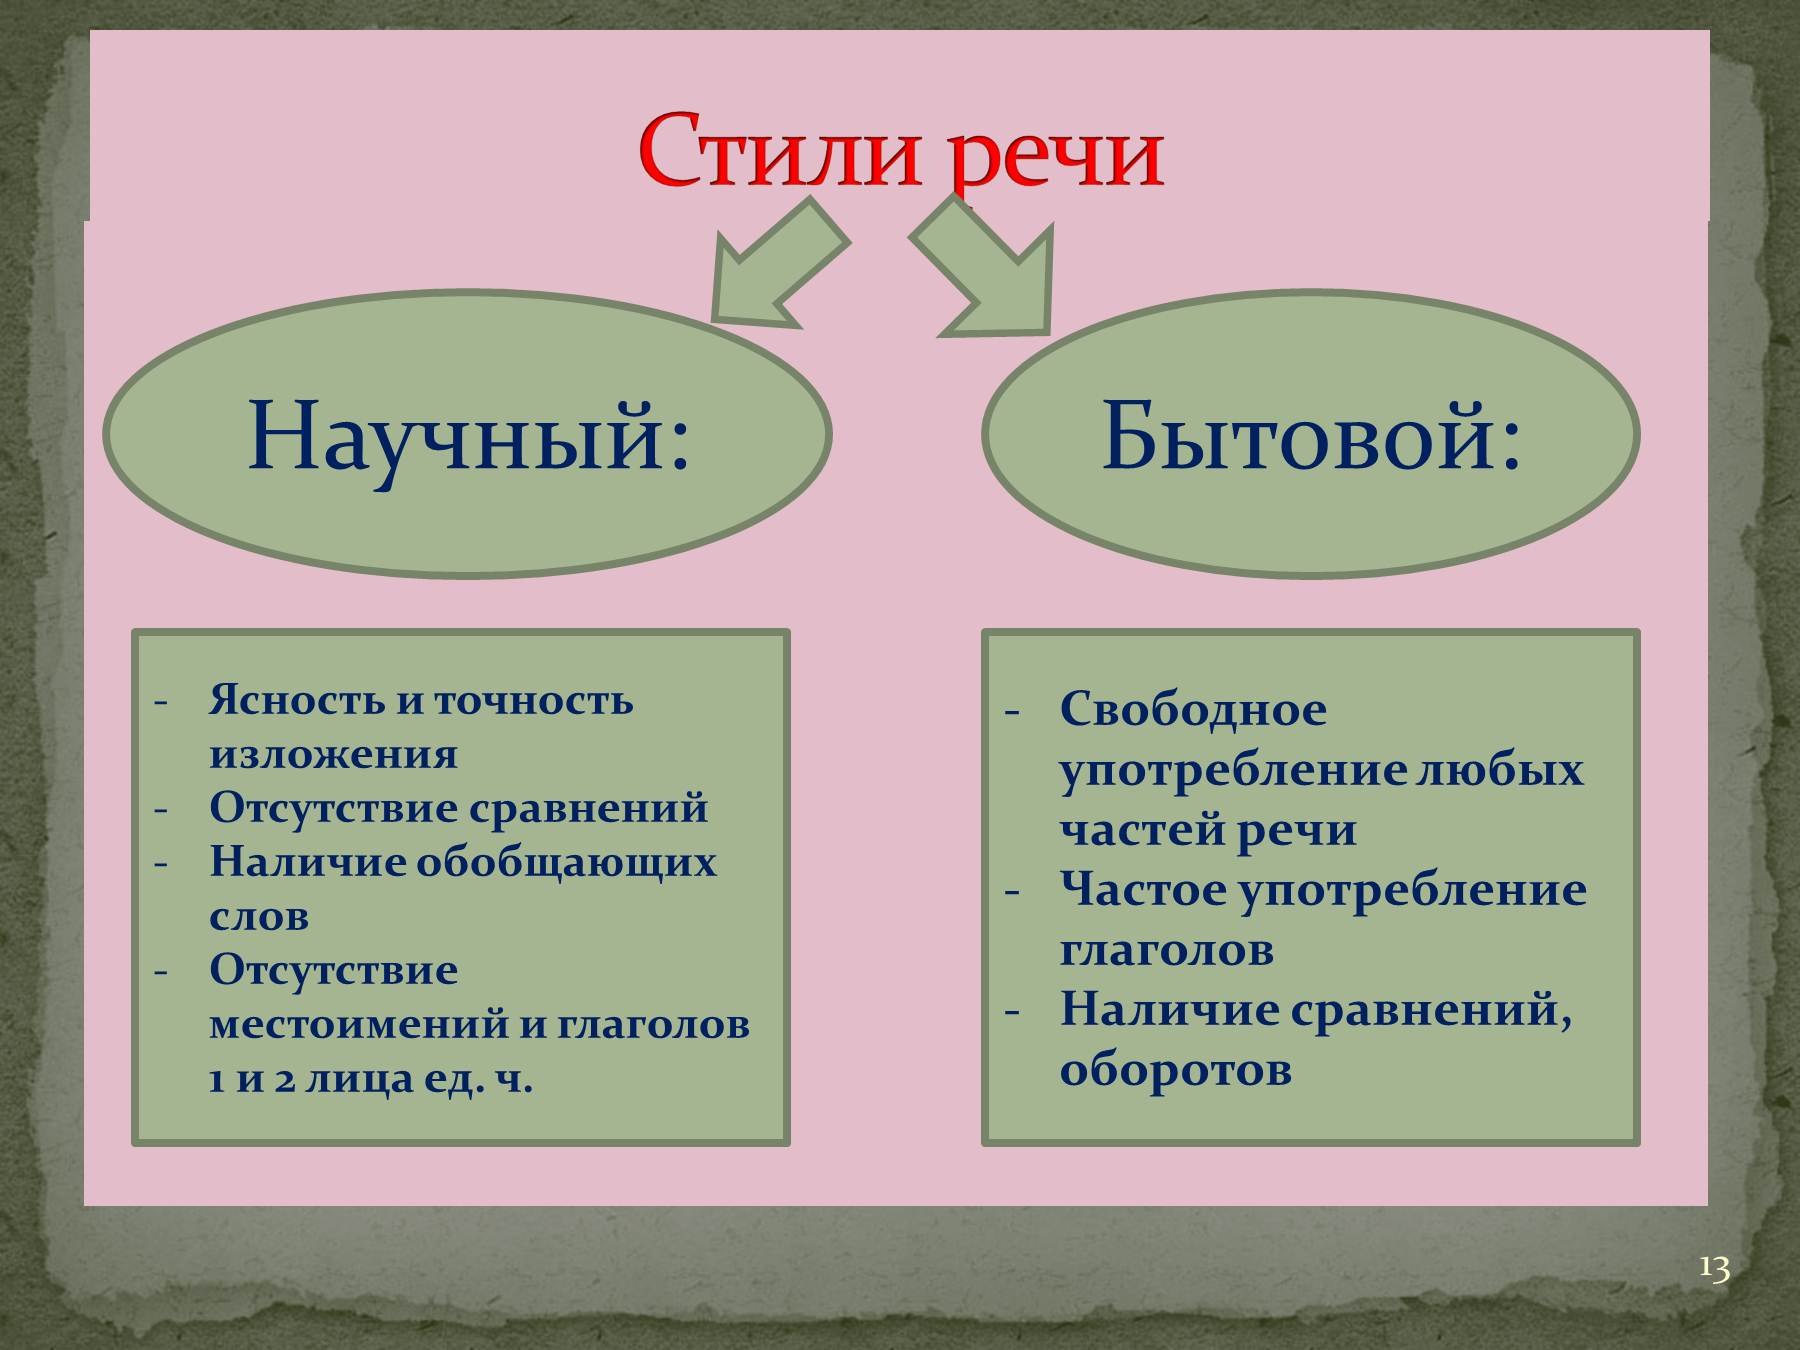 Стили речи по русскому языку